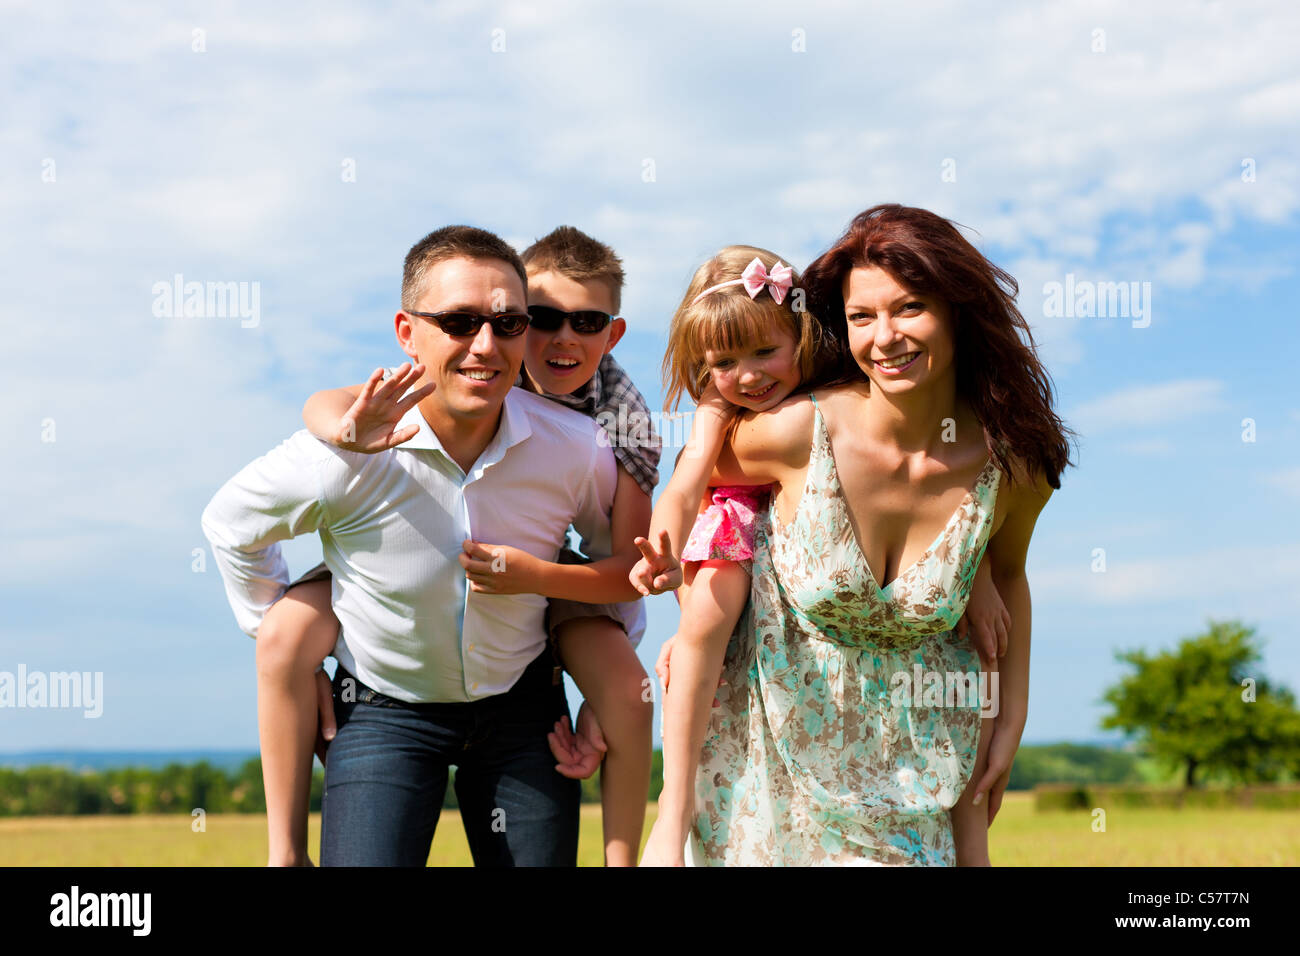 Glückliche Familie - Mutter, Vater, Kinder - stehend auf einer Wiese im Sommer Huckepack die Kinder Stockfoto